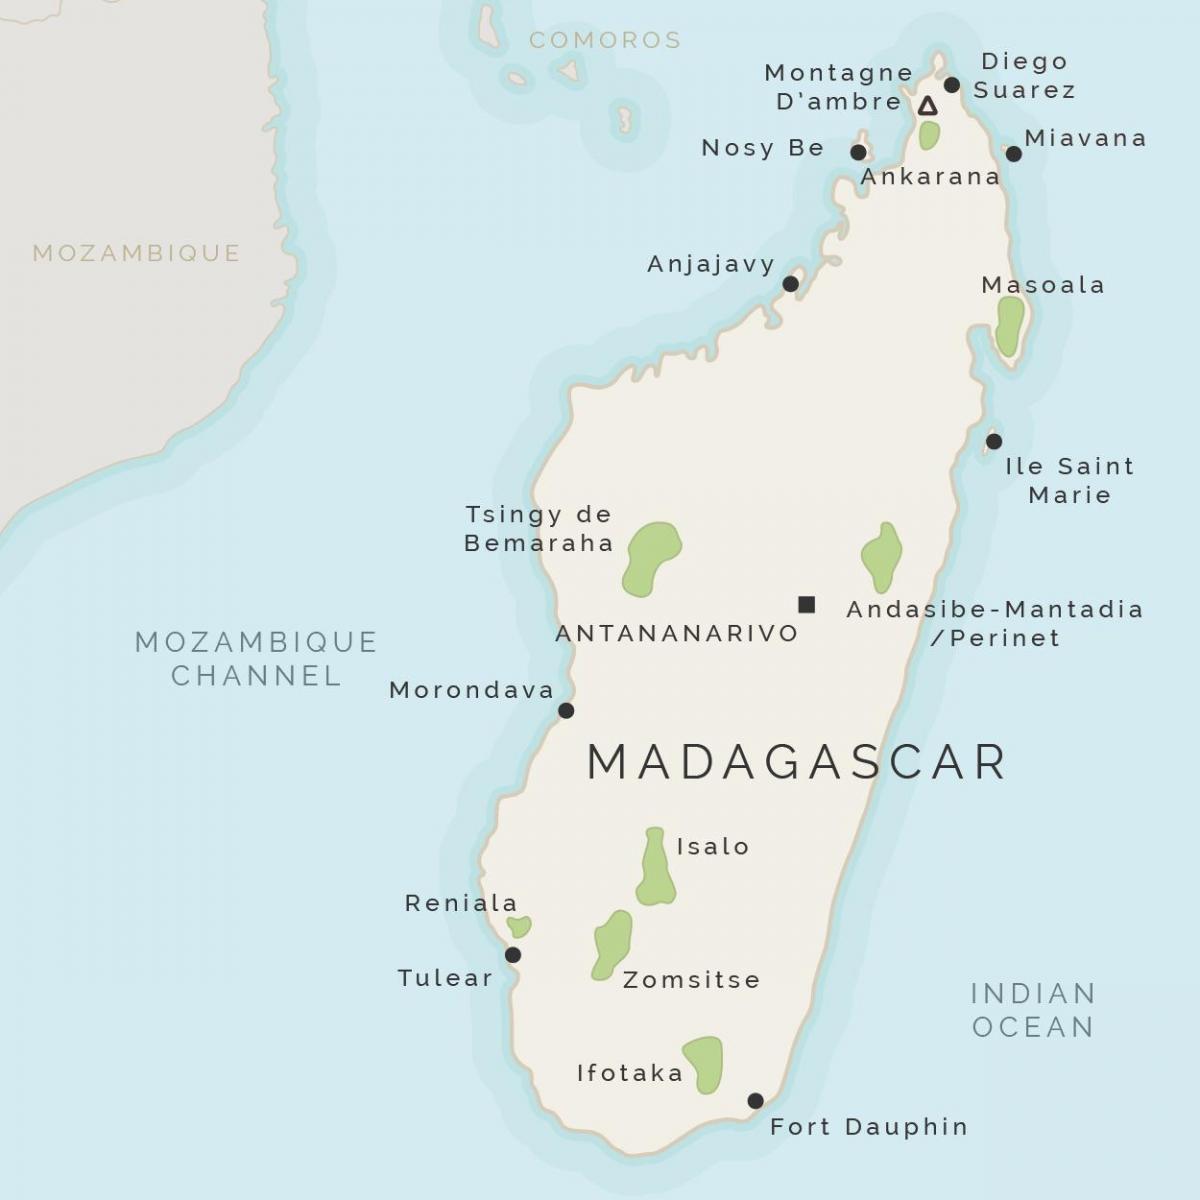 térkép Madagaszkár, valamint a környező szigetek